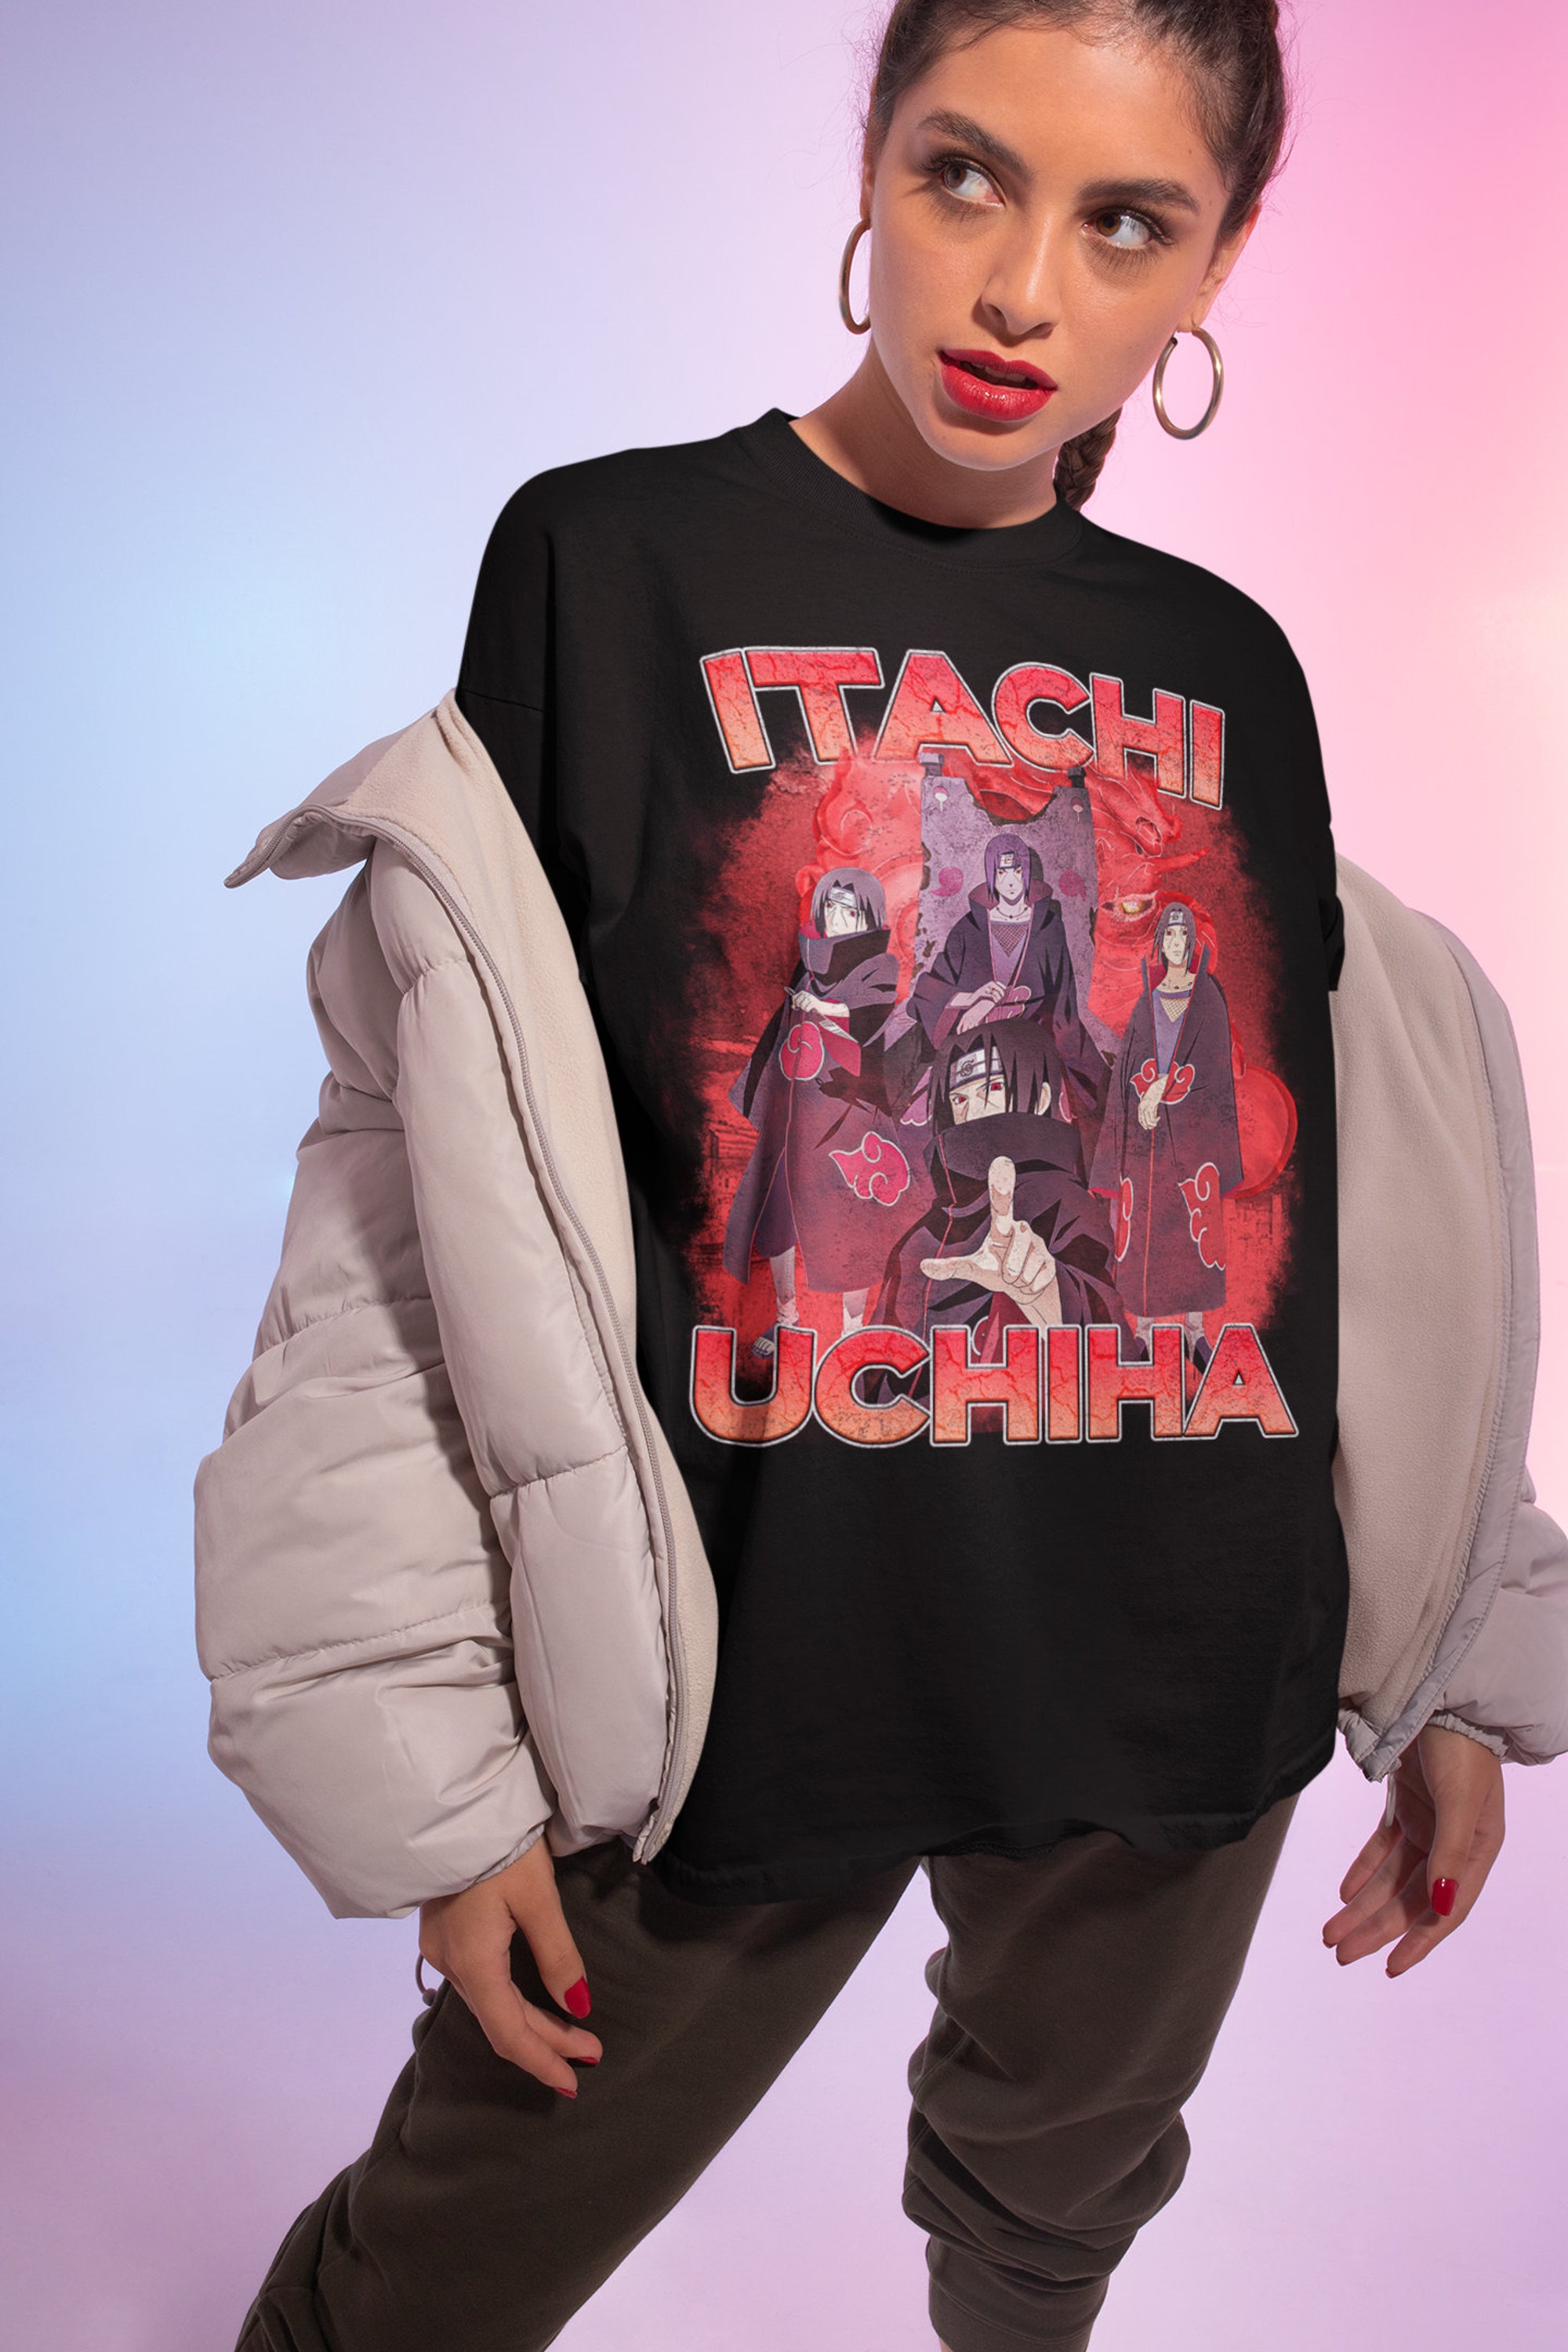 Discover Itachi Uchiha T Shirt, Anime Shirt